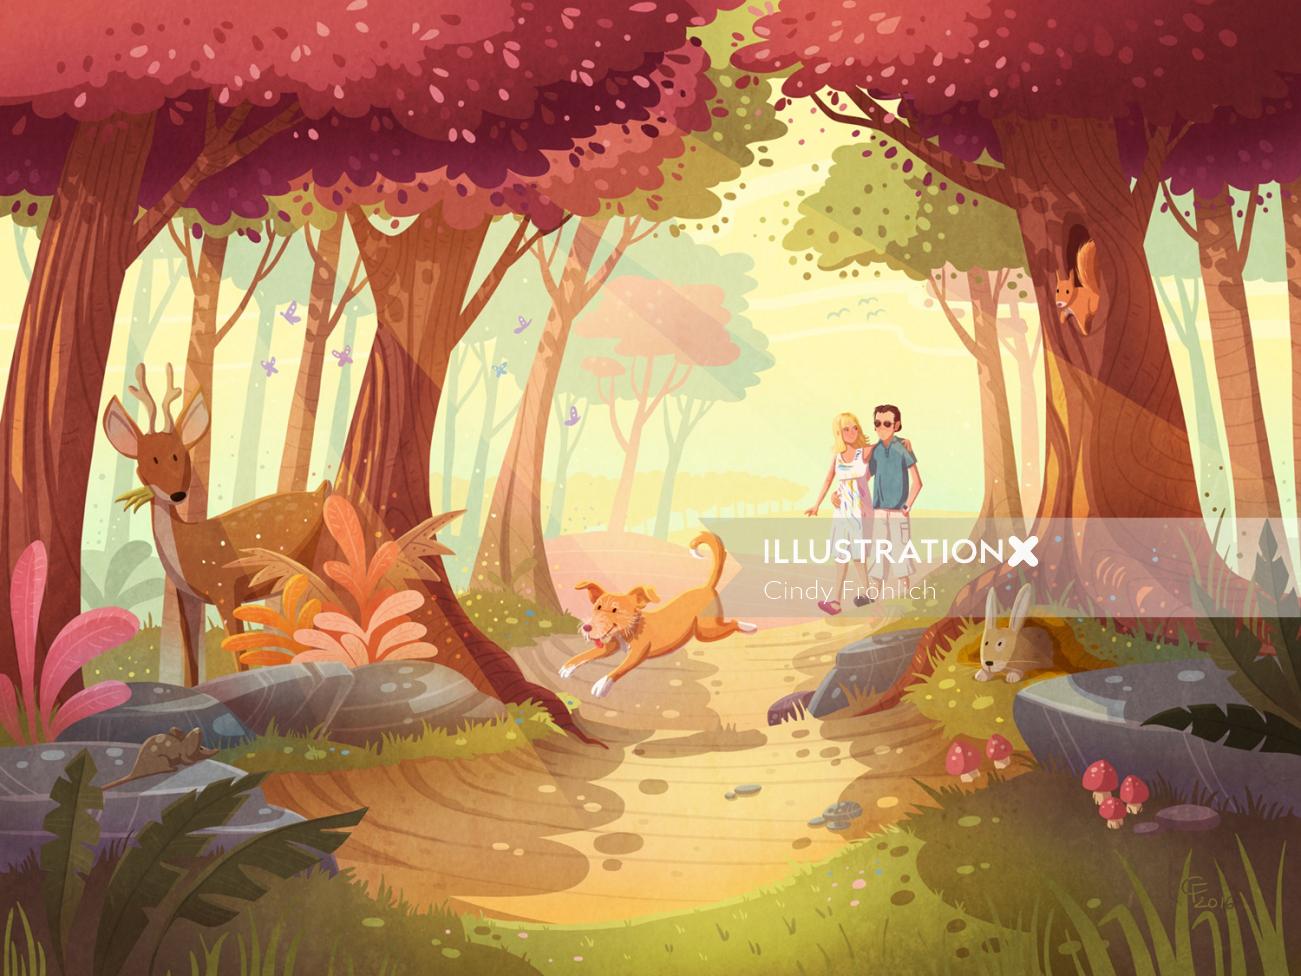 ジャングルの中を歩くカップルの子供のイラスト